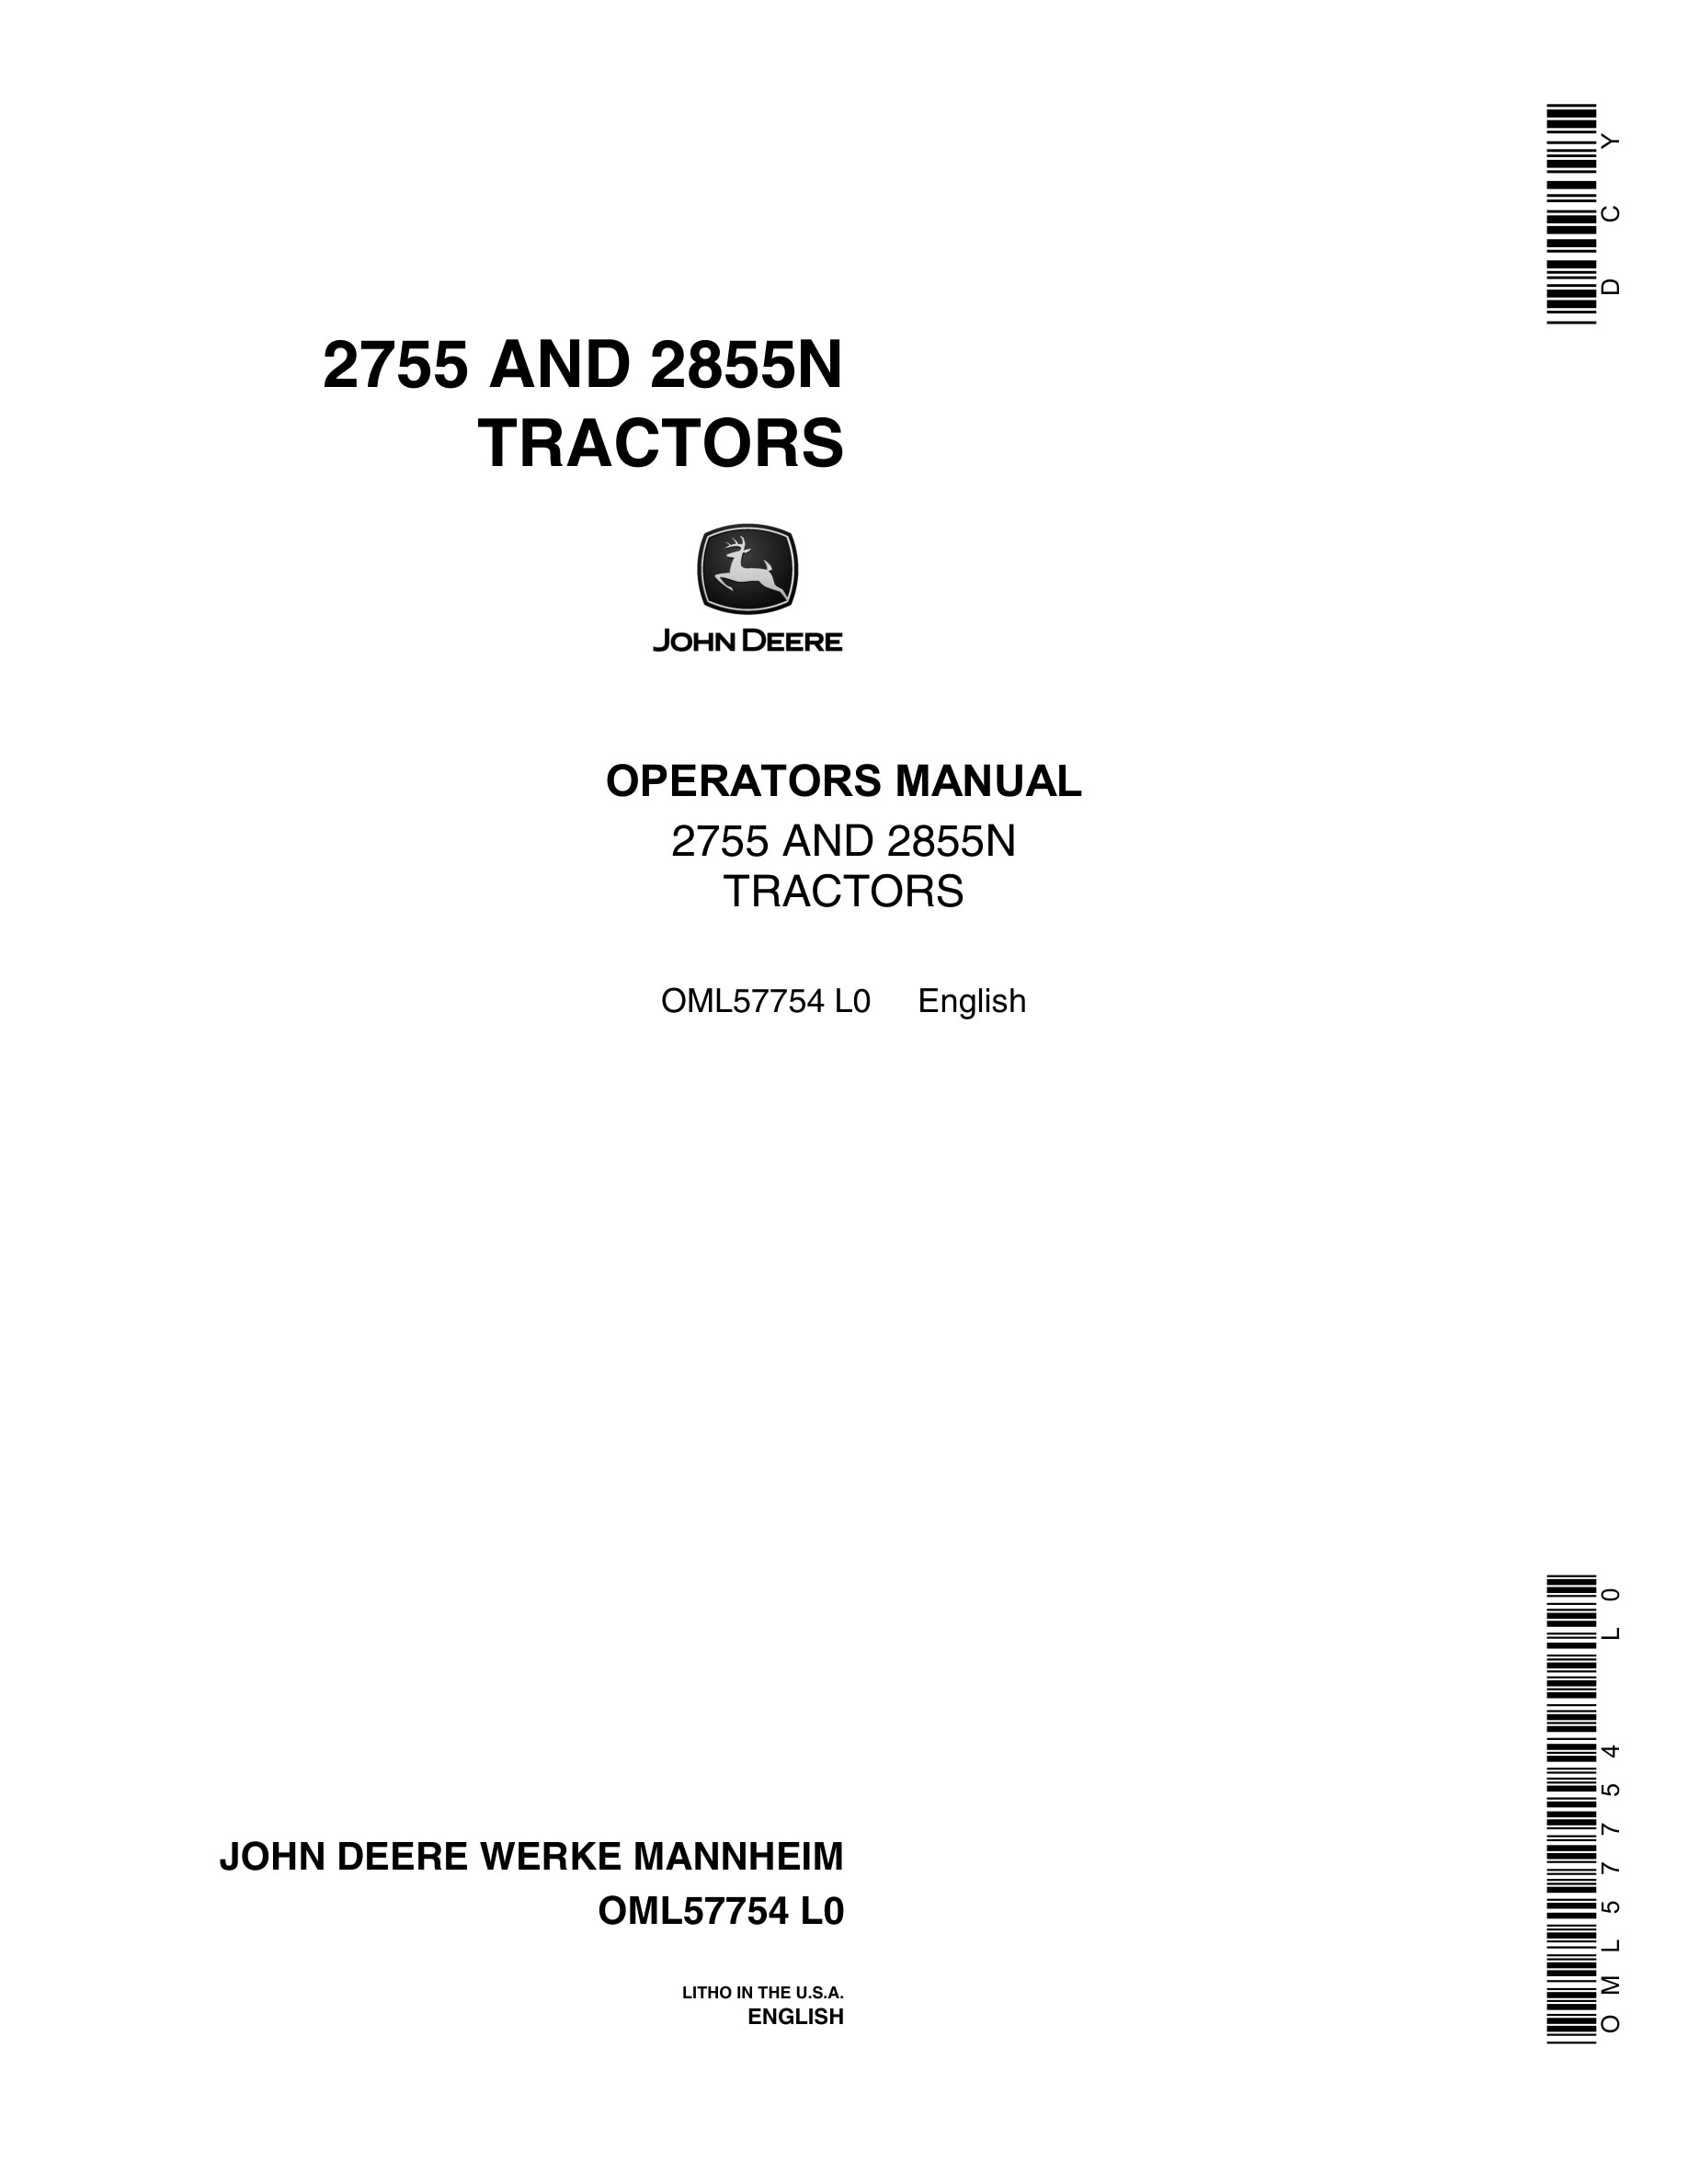 John Deere 2755 AND 2855N Tractor Operator Manual OML57754-1